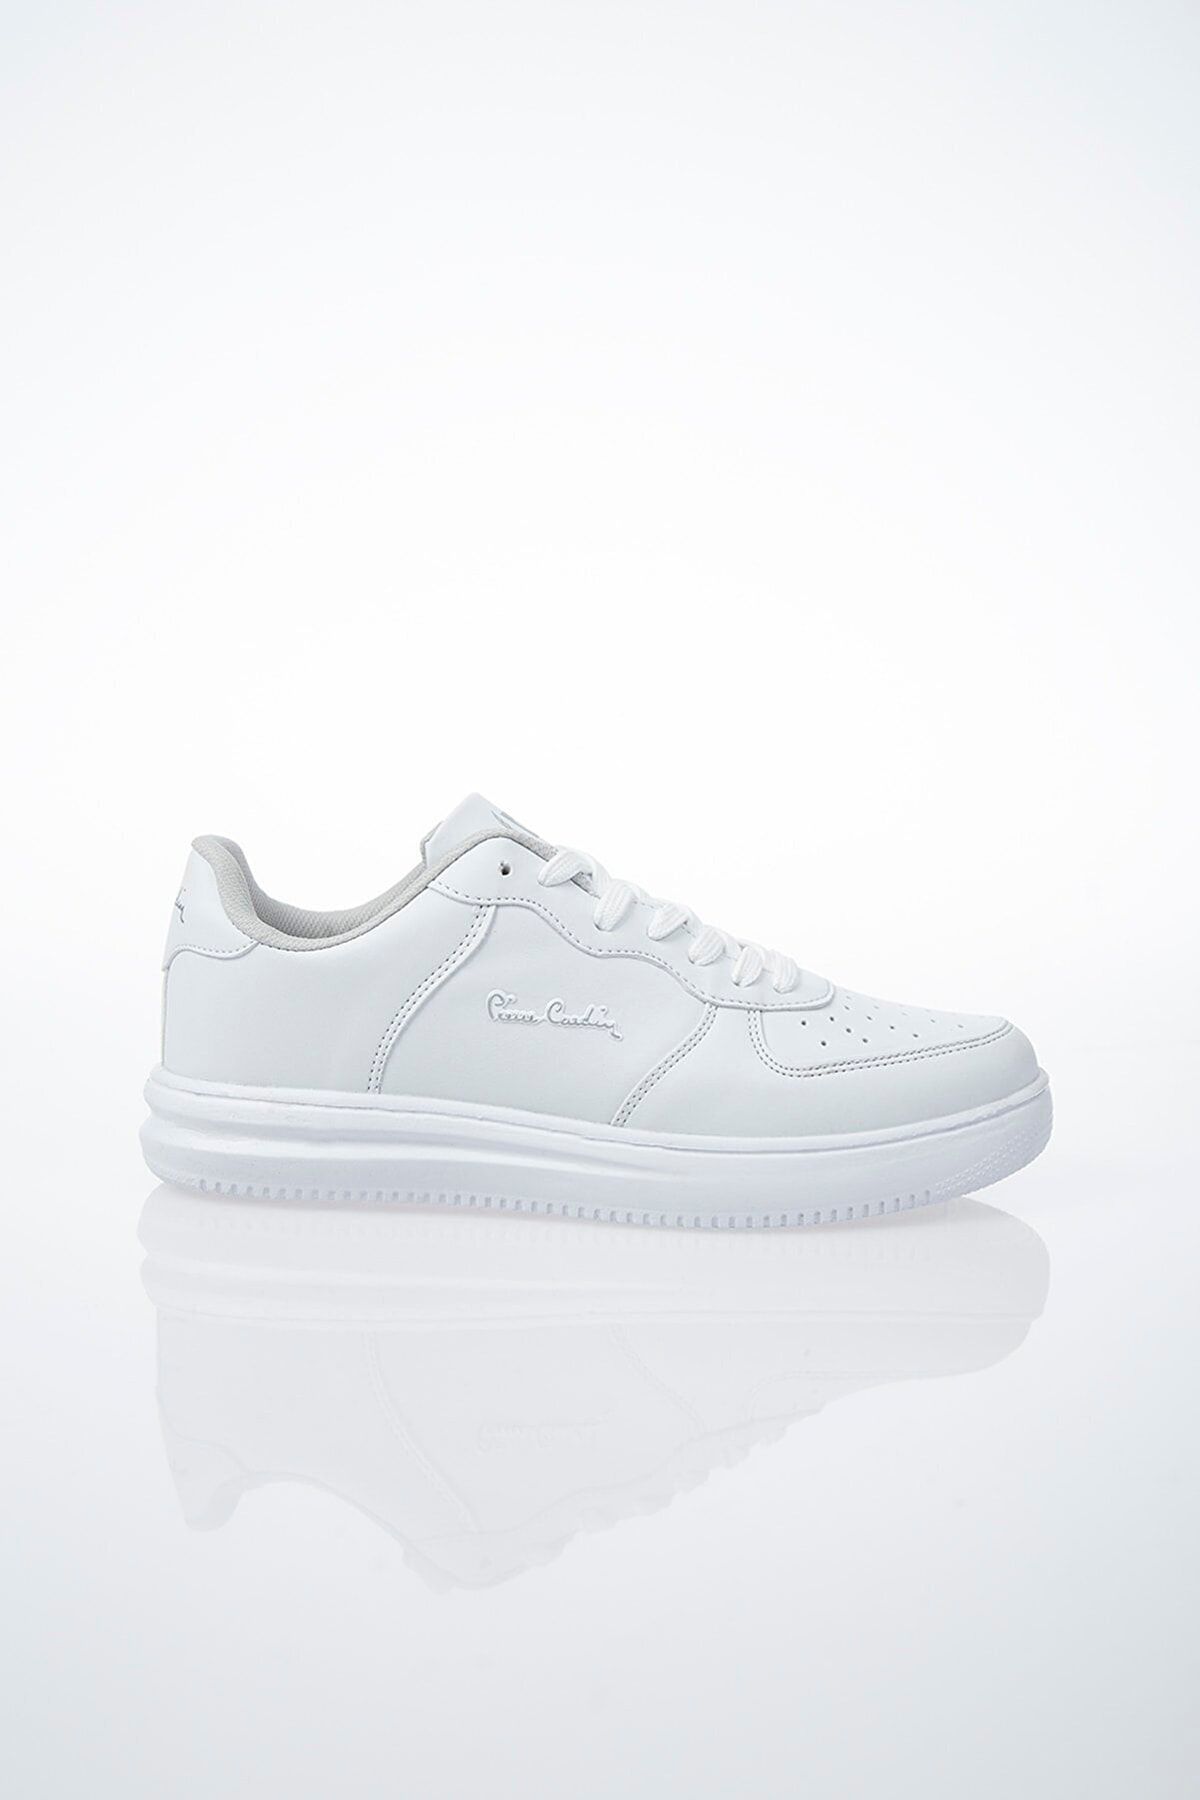 Pierre Cardin Pcs-10148 -10155 Beyaz Sneaker